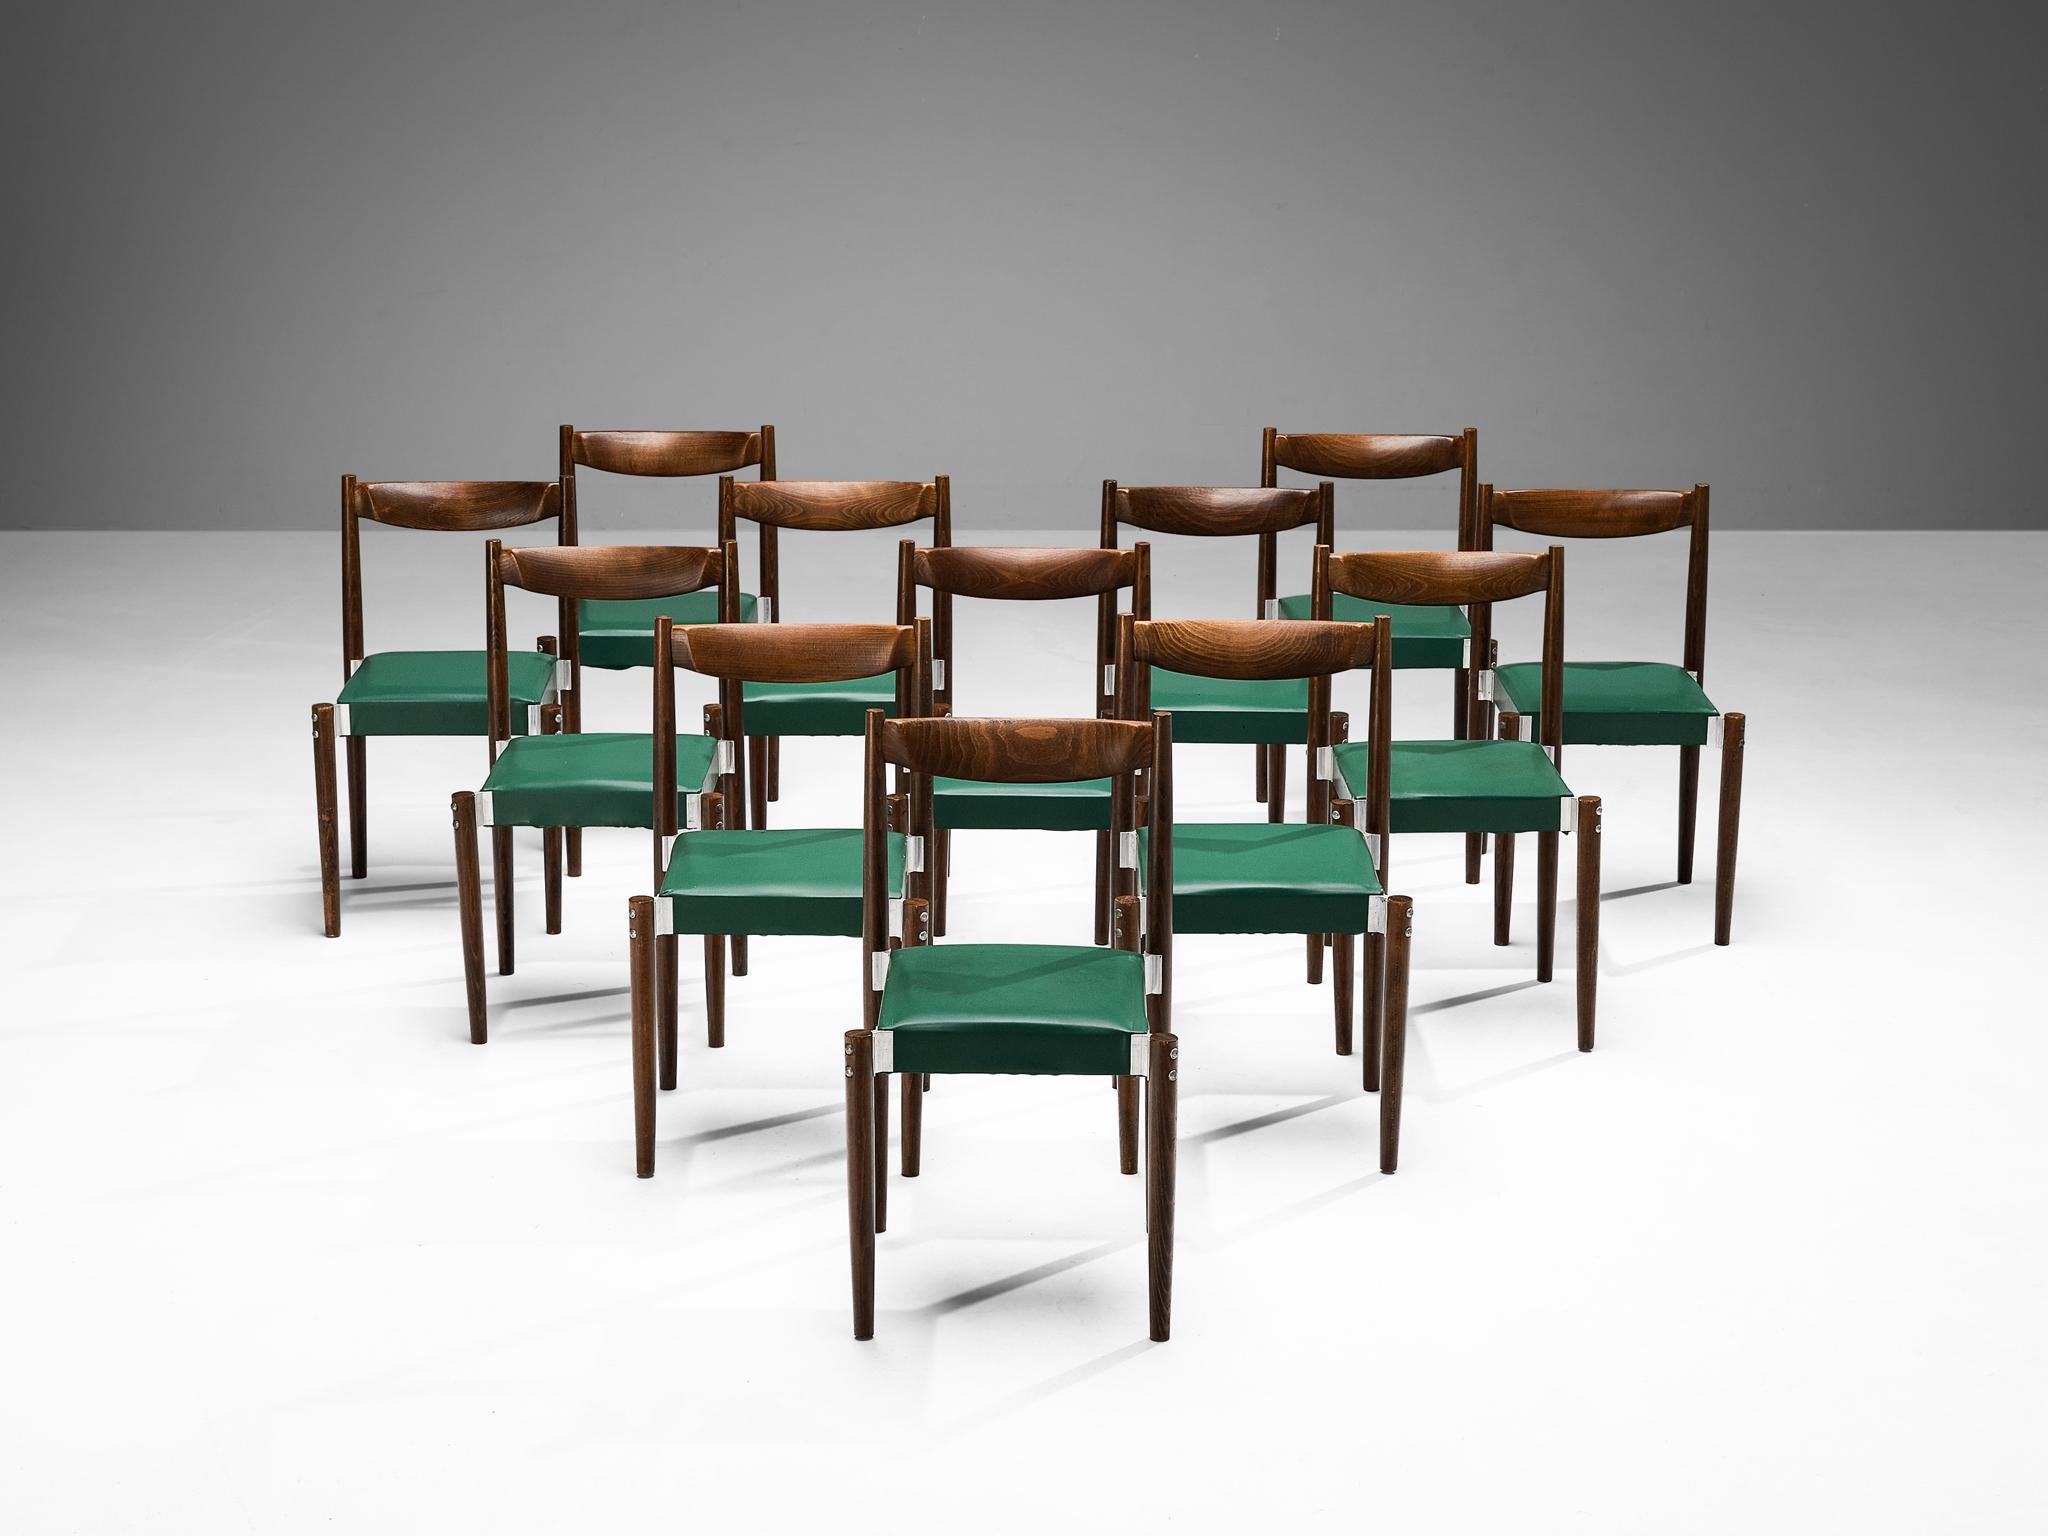 Satz von zwölf Esszimmerstühlen, Kunstleder, gebeizte Buche, Aluminium, Tschechische Republik, 1960er Jahre.

Wohlproportionierte Esszimmerstühle mit konstruktiven Details, die in den Aluminiumverbindungen, die die Beine mit dem Sitz verbinden,